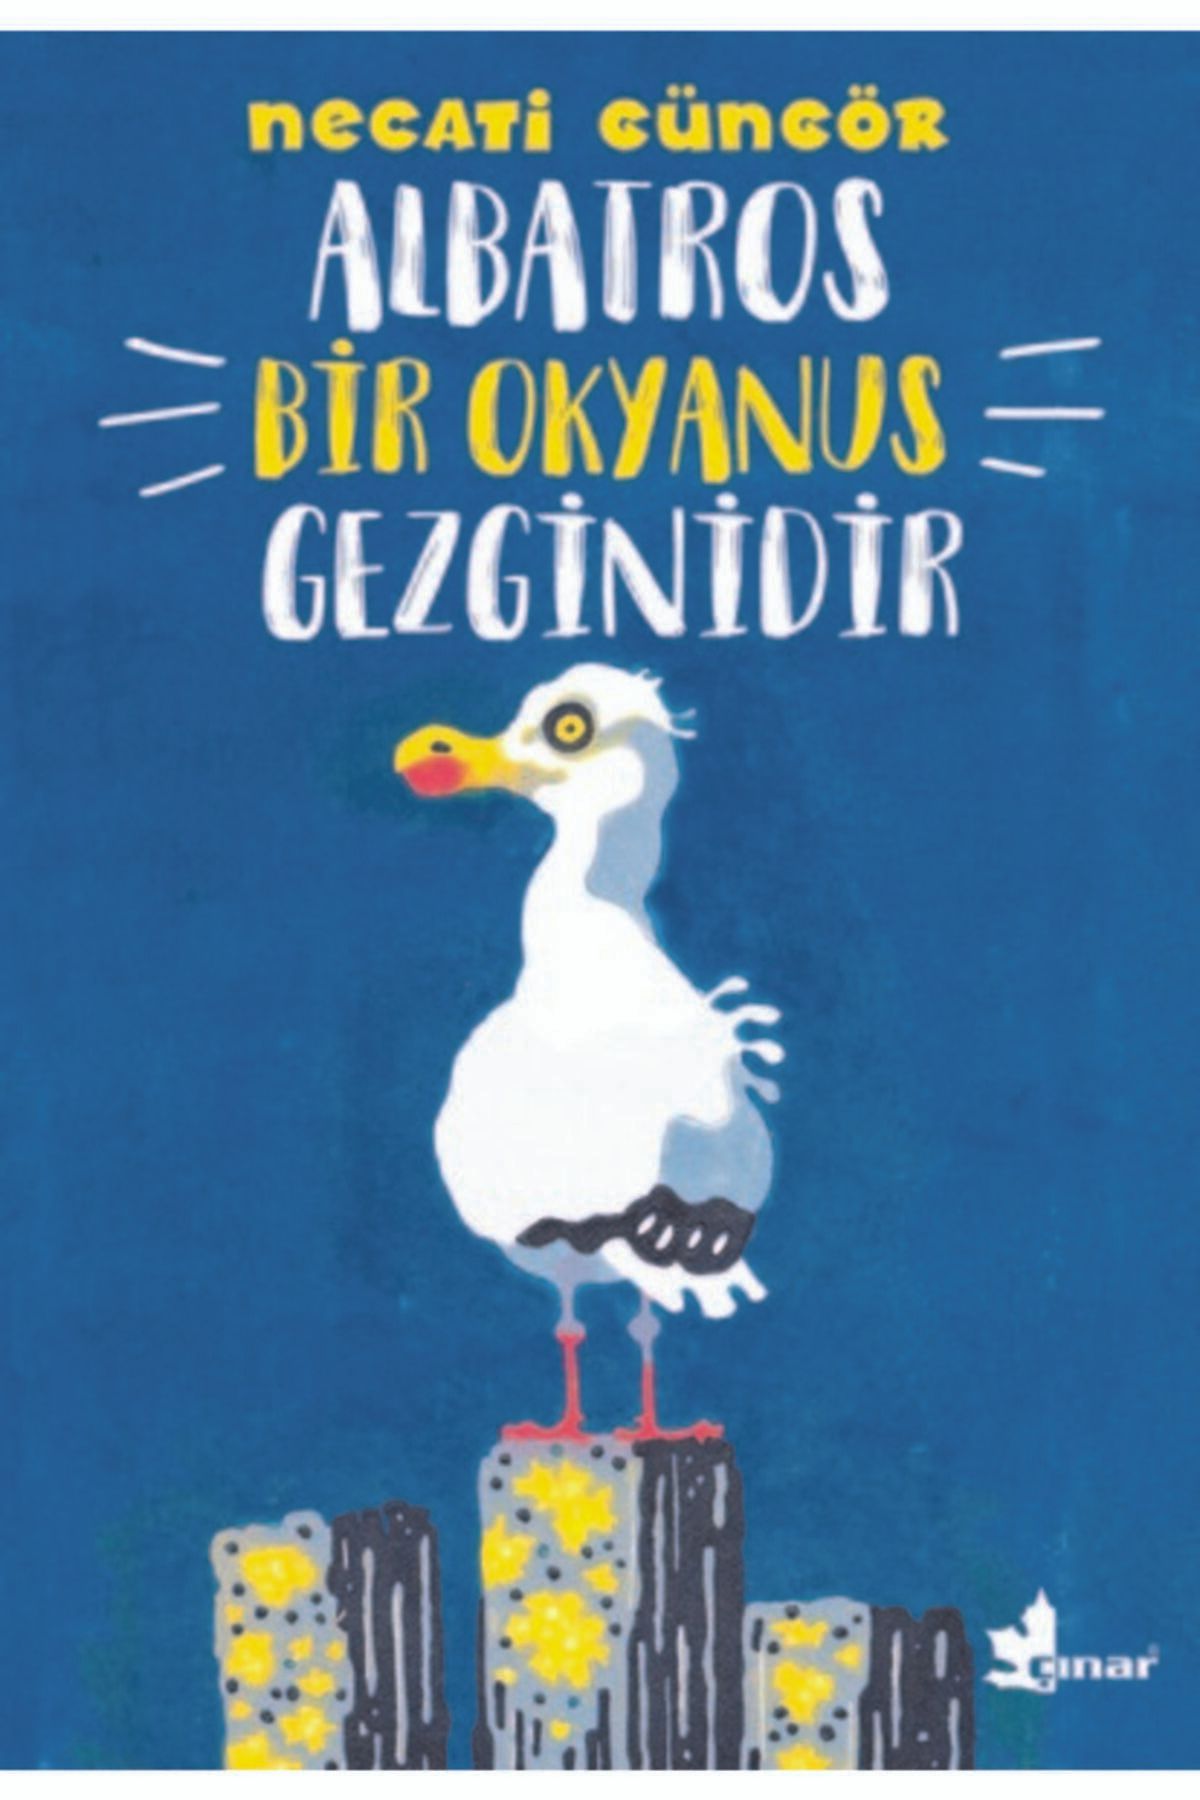 Çınar Yayınları Albatros Bir Okyanus Gezginidir